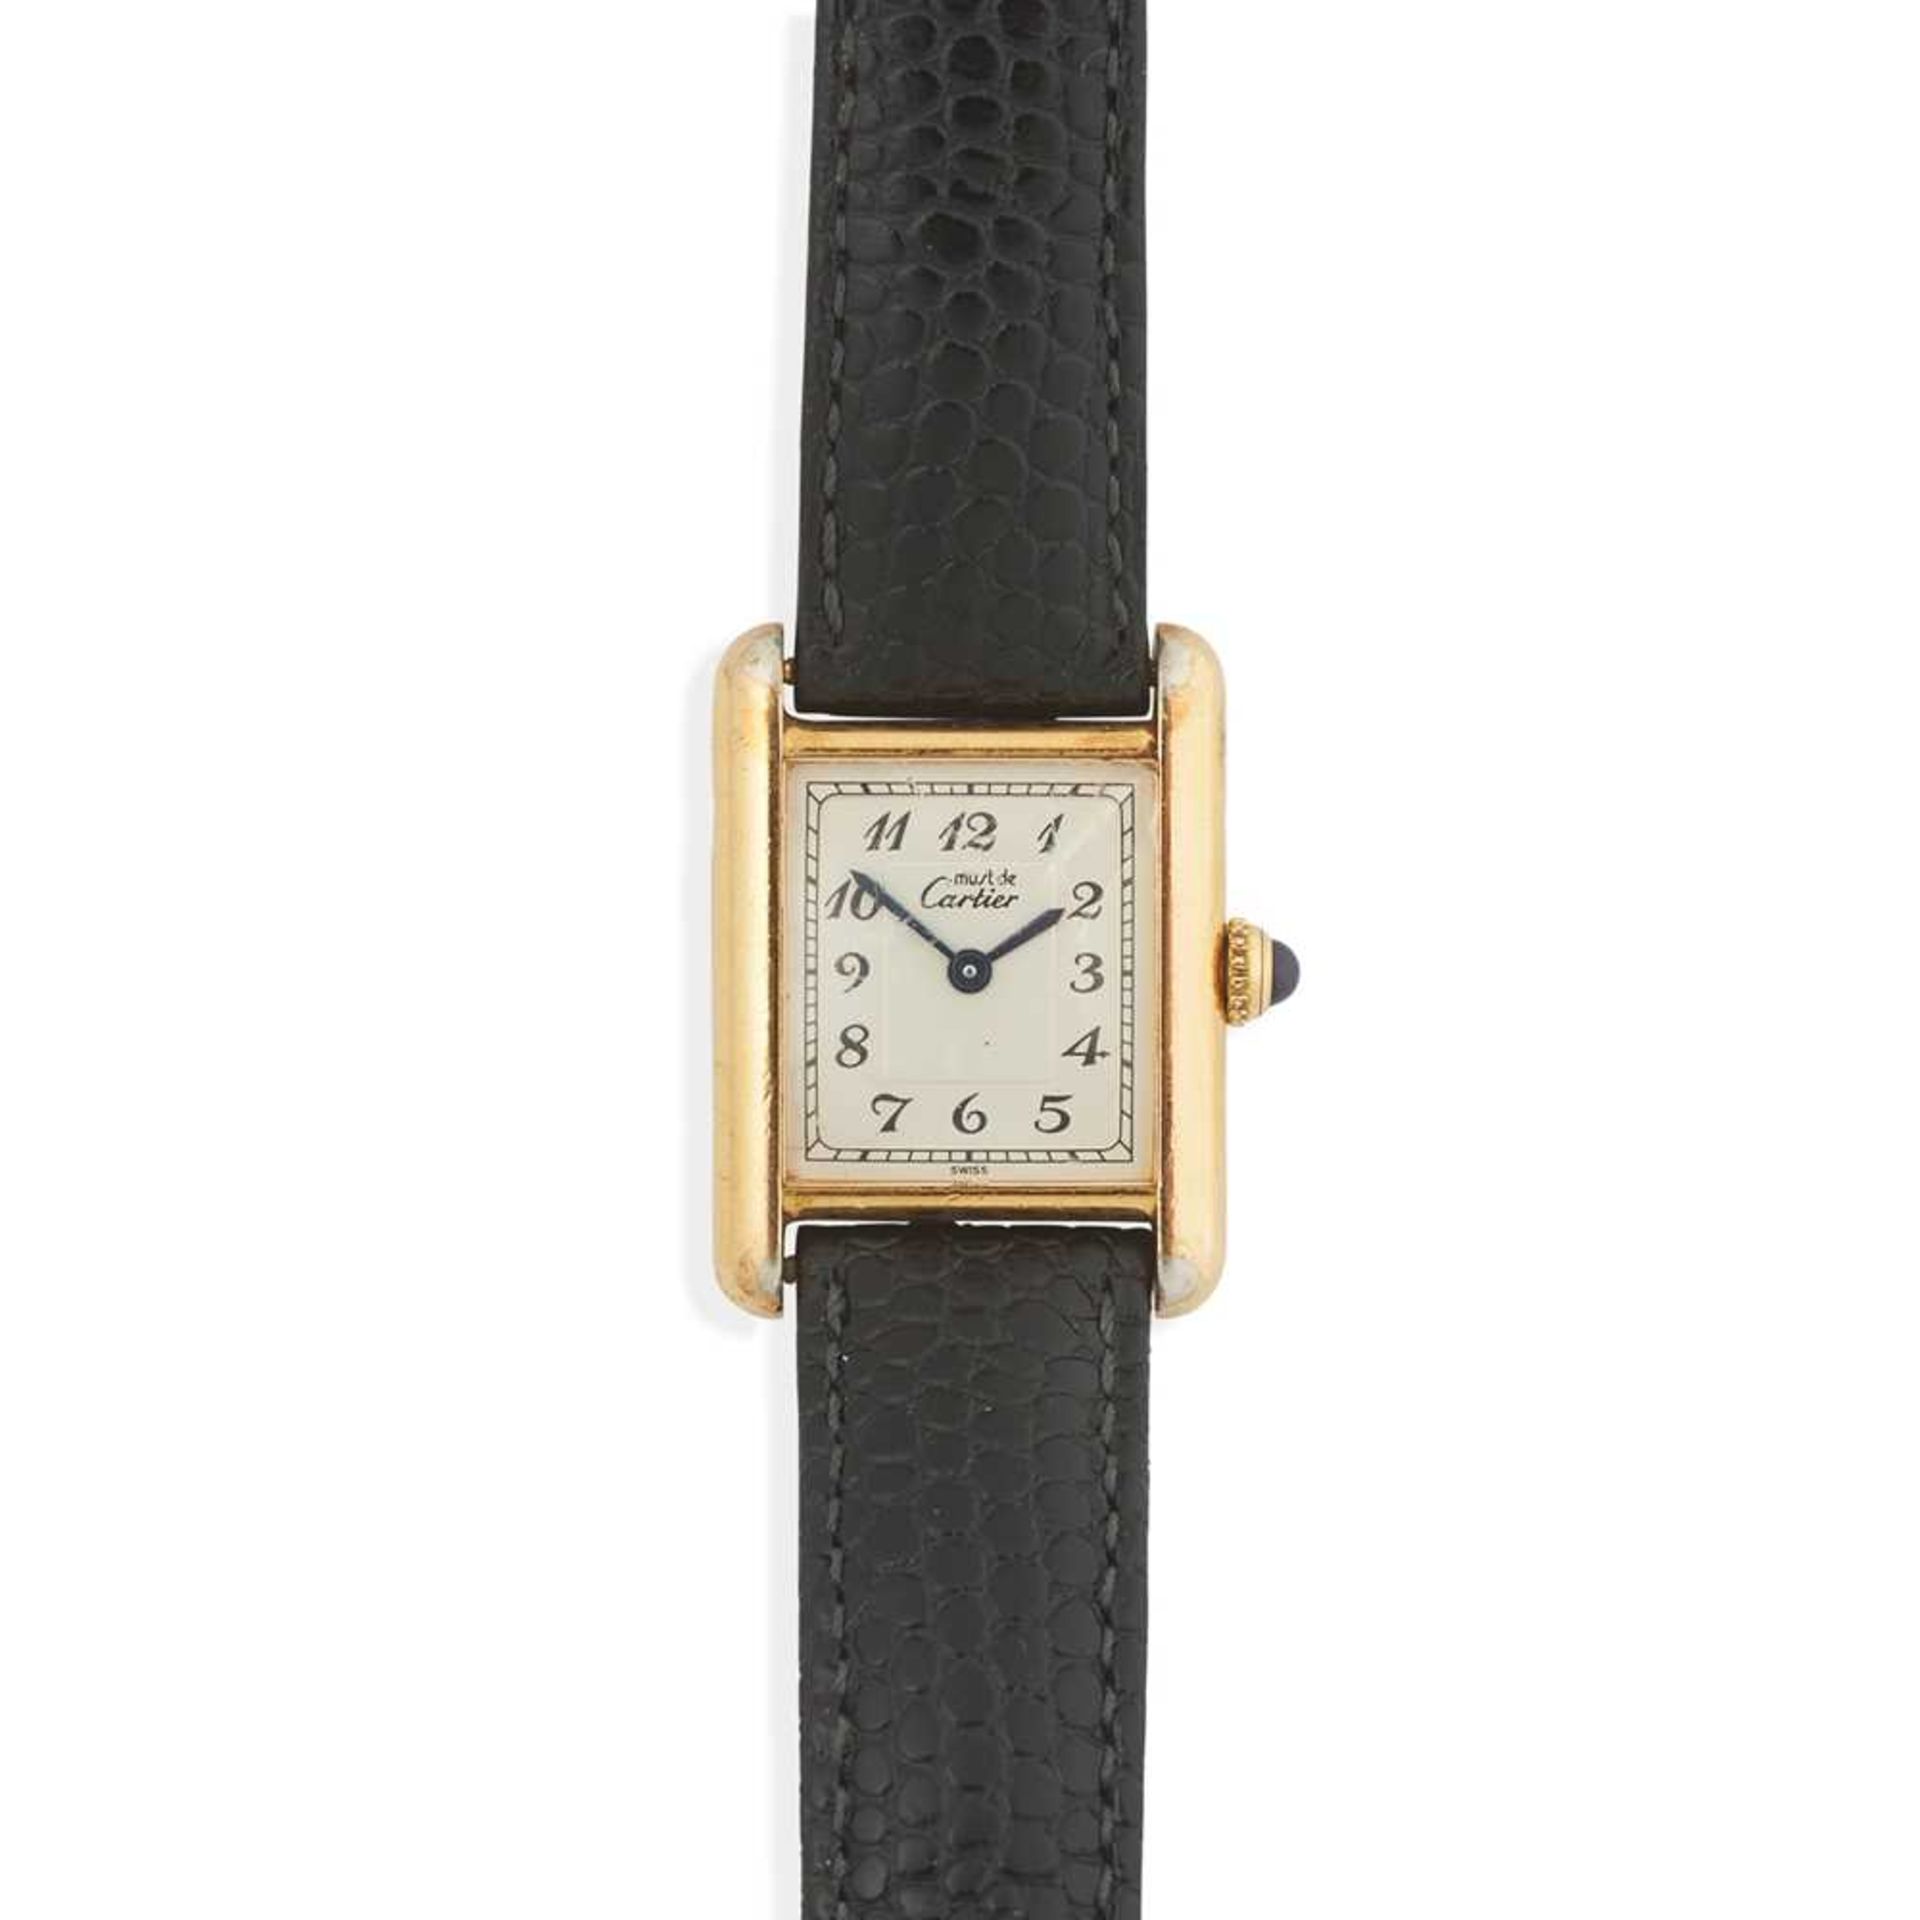 Must de Cartier: a lady's wrist watch